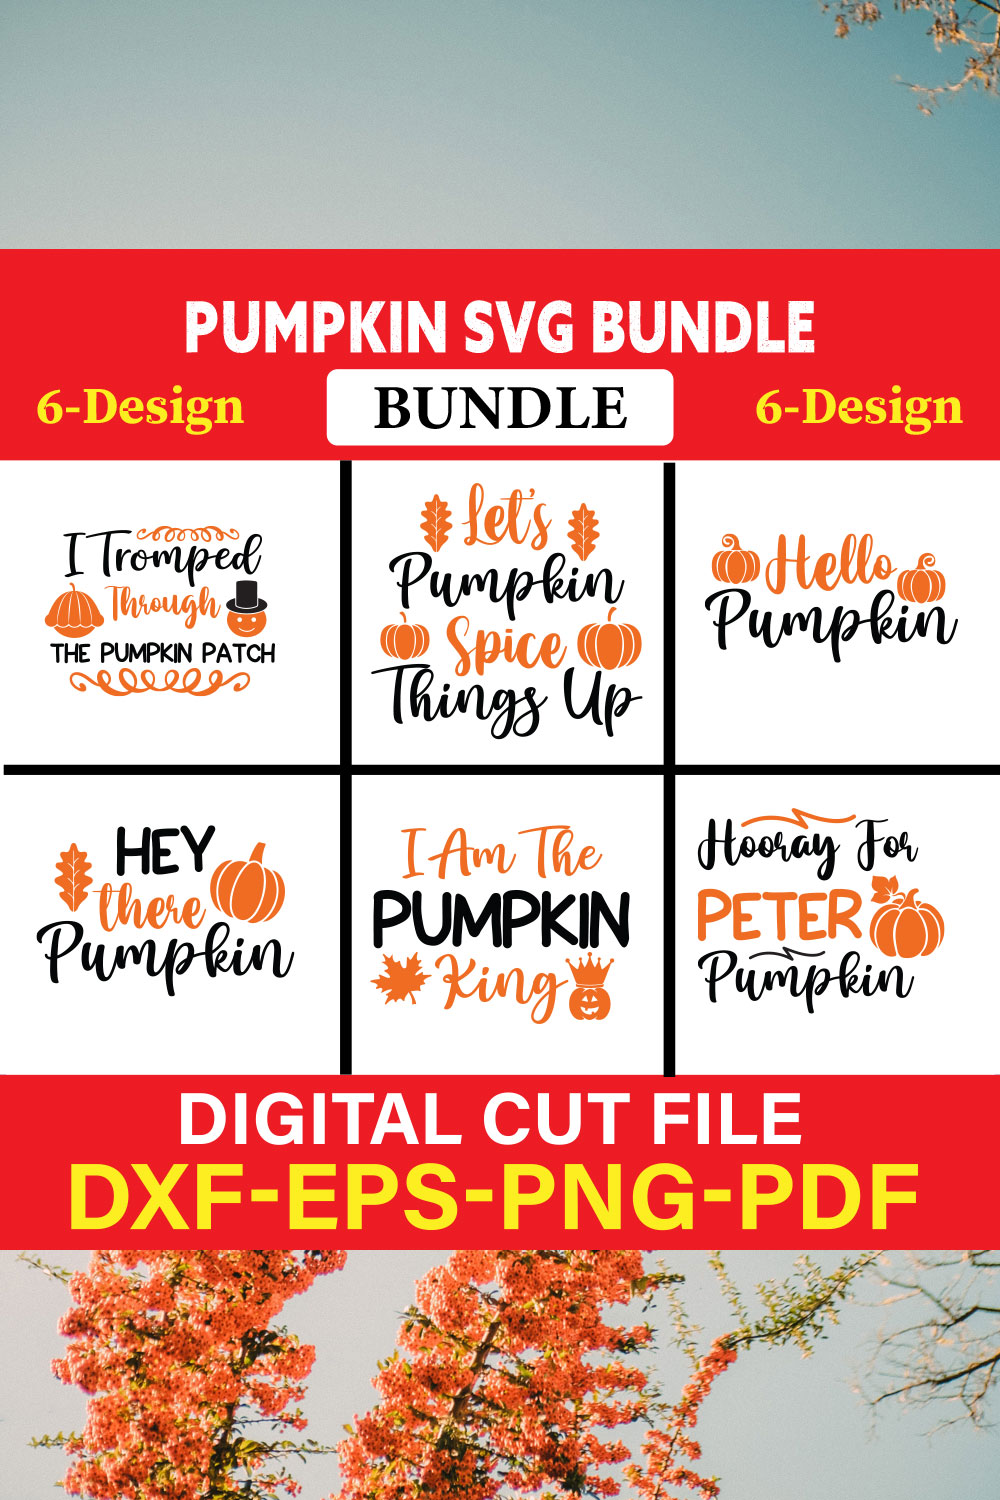 Pumpkin svg bundle T-shirt Design Bundle Vol-1 pinterest preview image.